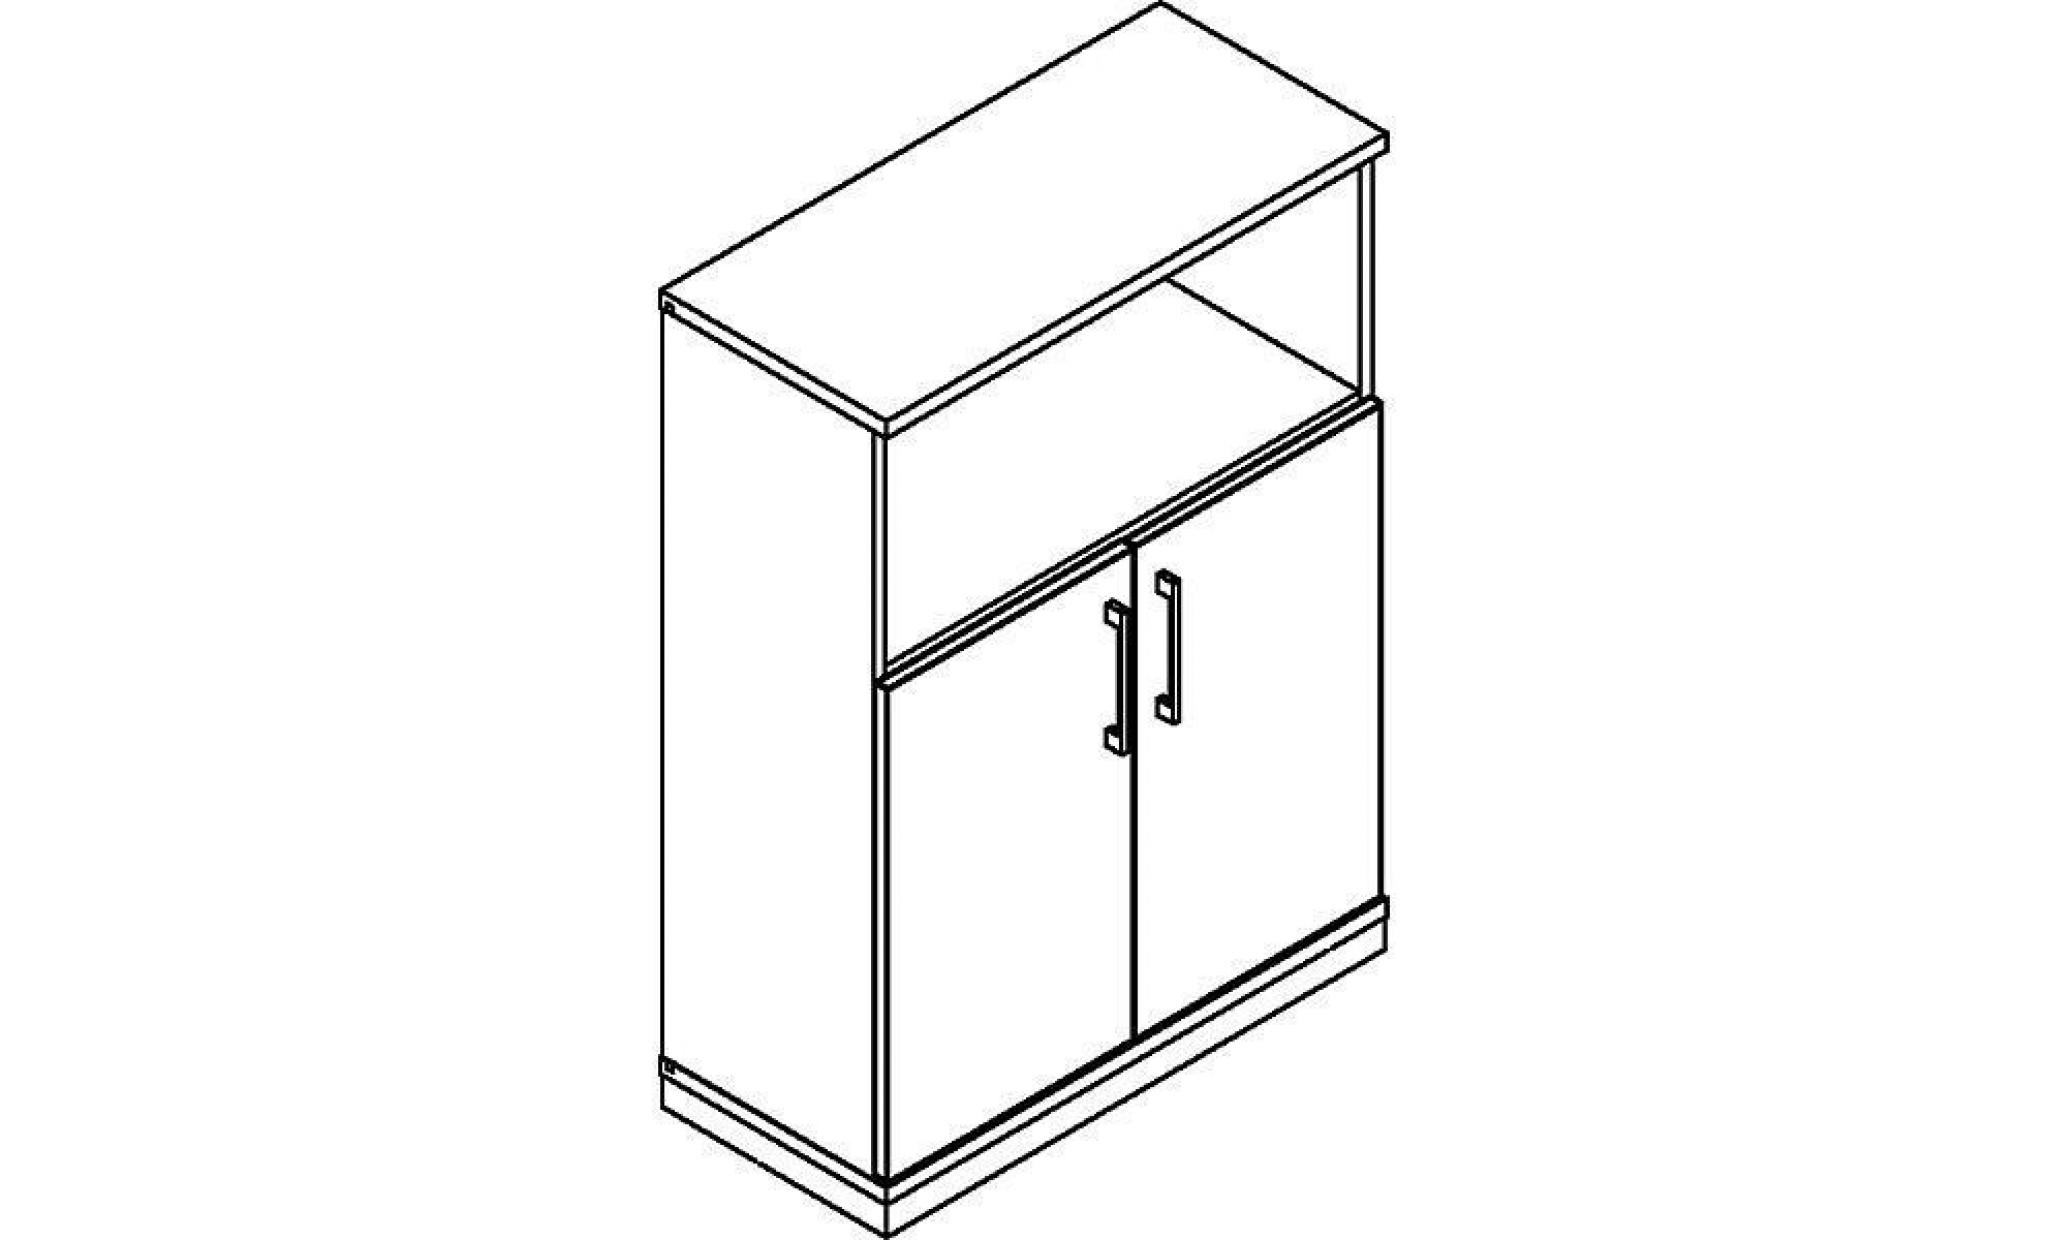 thea armoire combinée   2 tablettes, 2 portes   gris clair   armoire de bureau armoire et rayonnage combinés armoire universelle pas cher